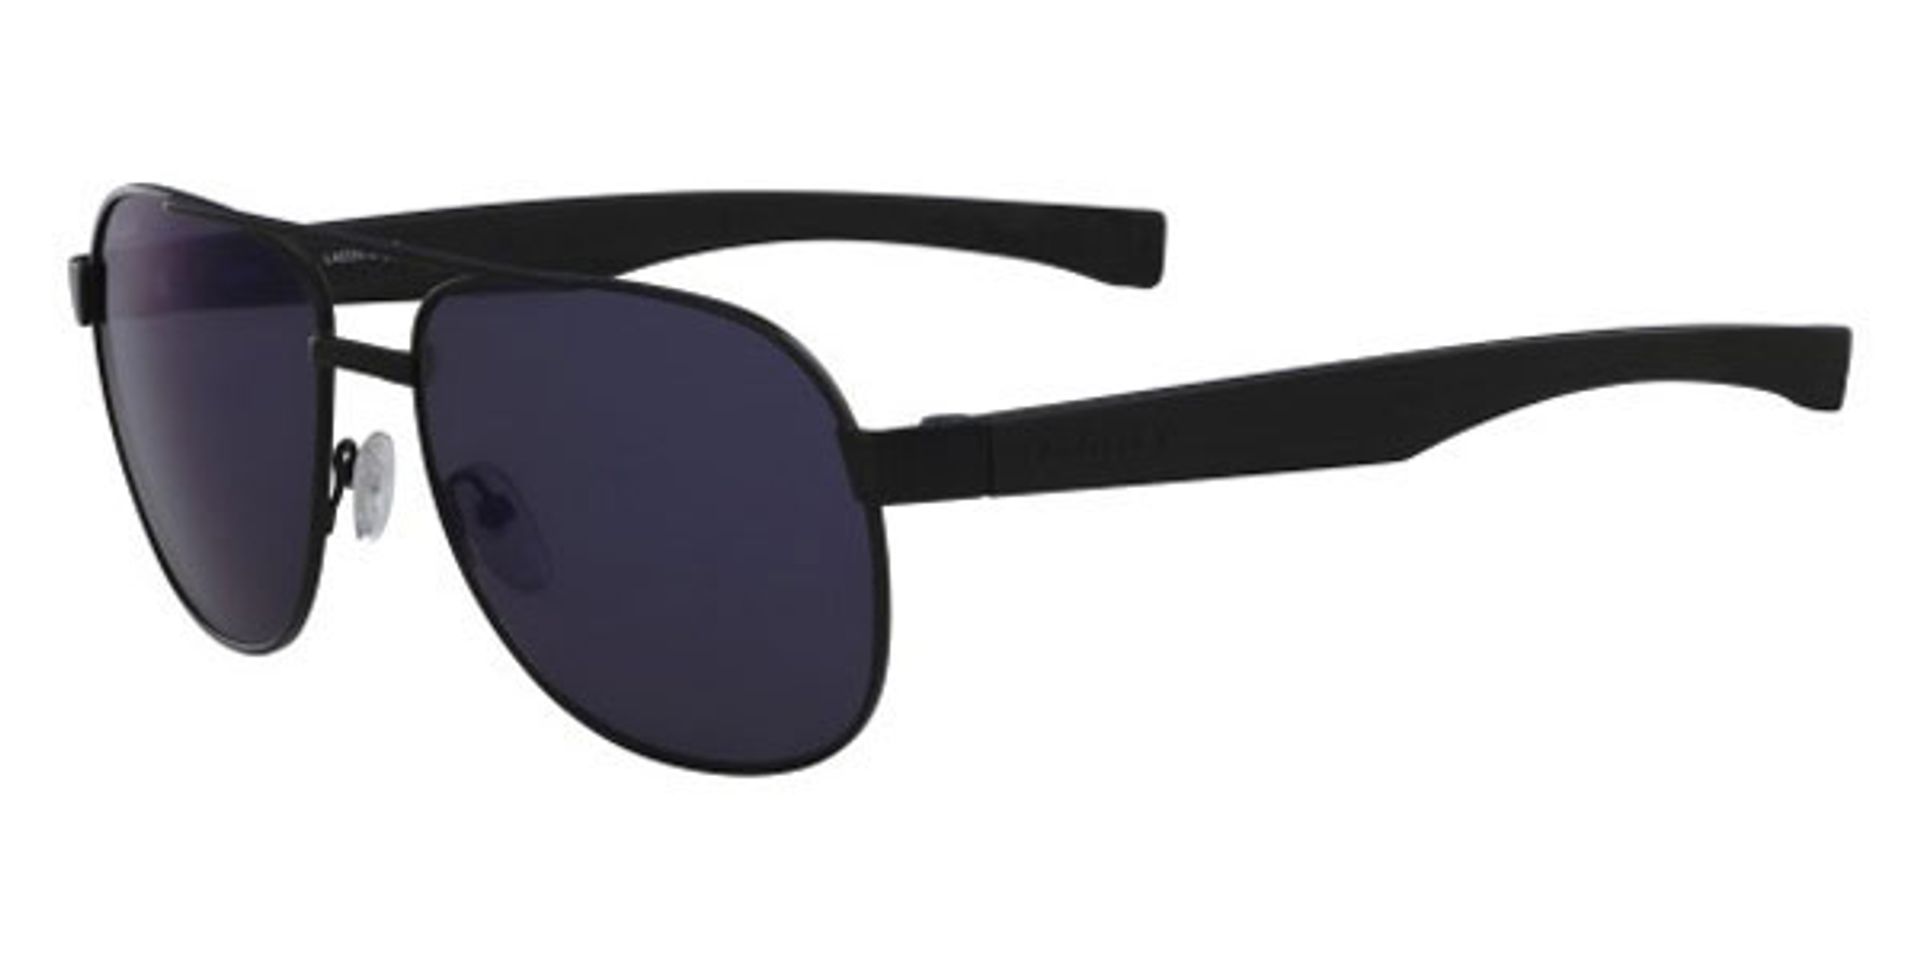 Mắt kính Lacoste L186S 001 Black Matte Sunglasses